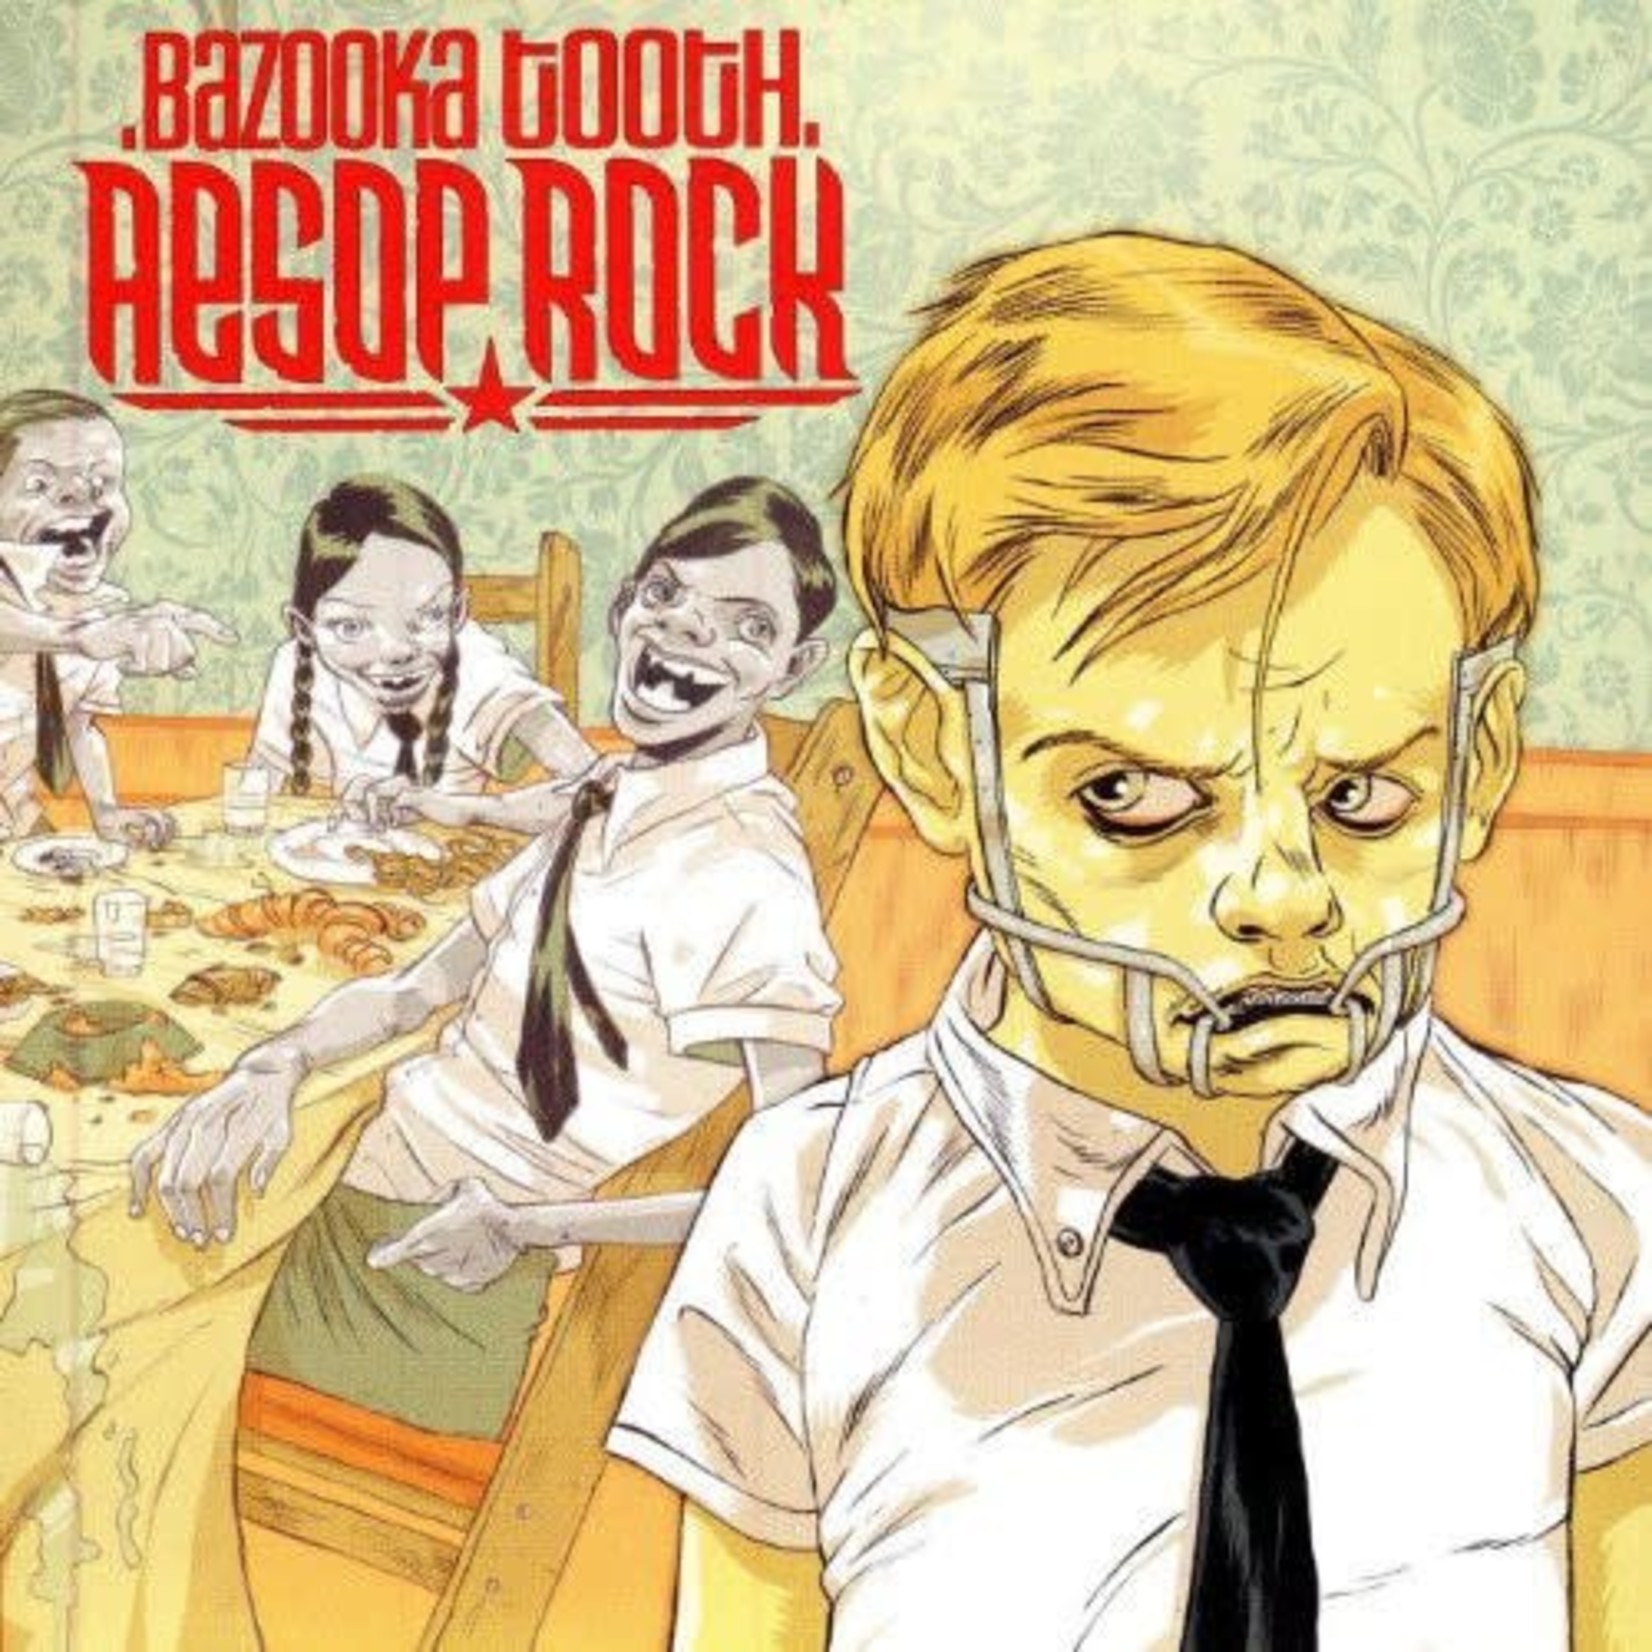 Aesop Rock - Bazooka Tooth (3LP)